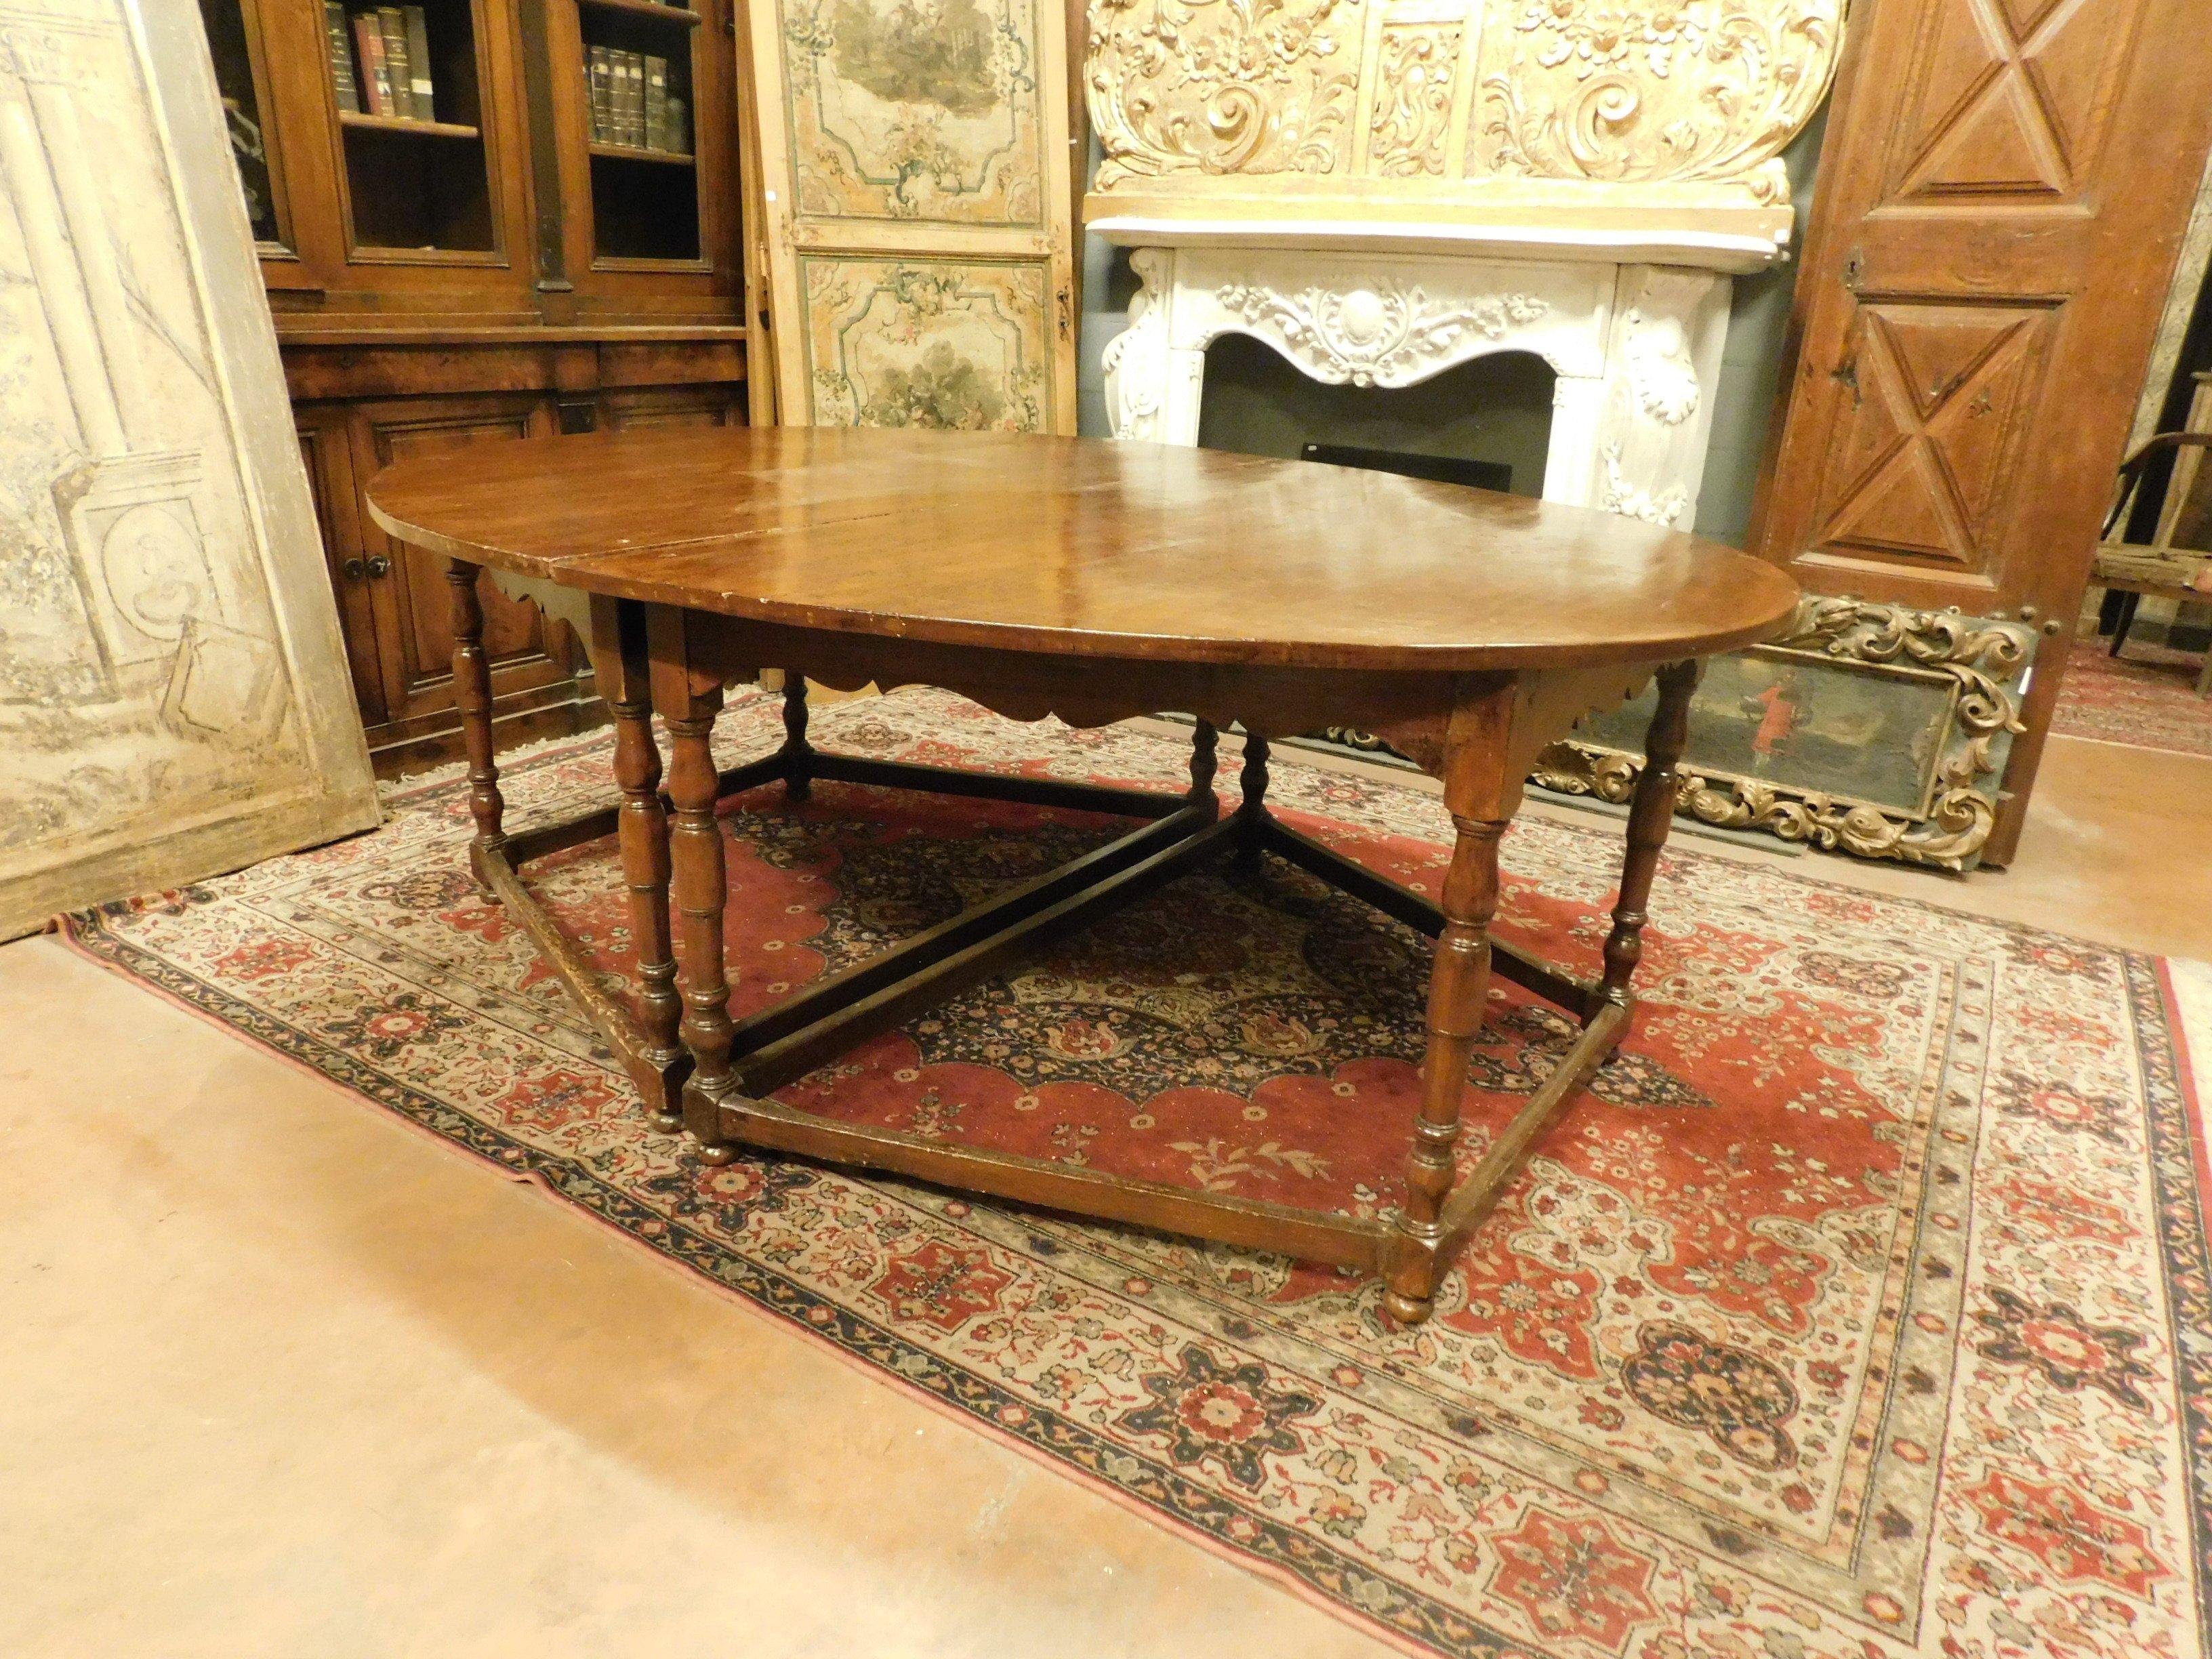 Très ancienne table ovale en bois de hêtre précieux, composée de 2 parties, divisible en 2 demi-lunes et avec 8 pieds sculptés à la main avec des motifs de l'époque, fabriquée au 17ème siècle, pour un palais noble en Italie.
Elle peut être utilisée